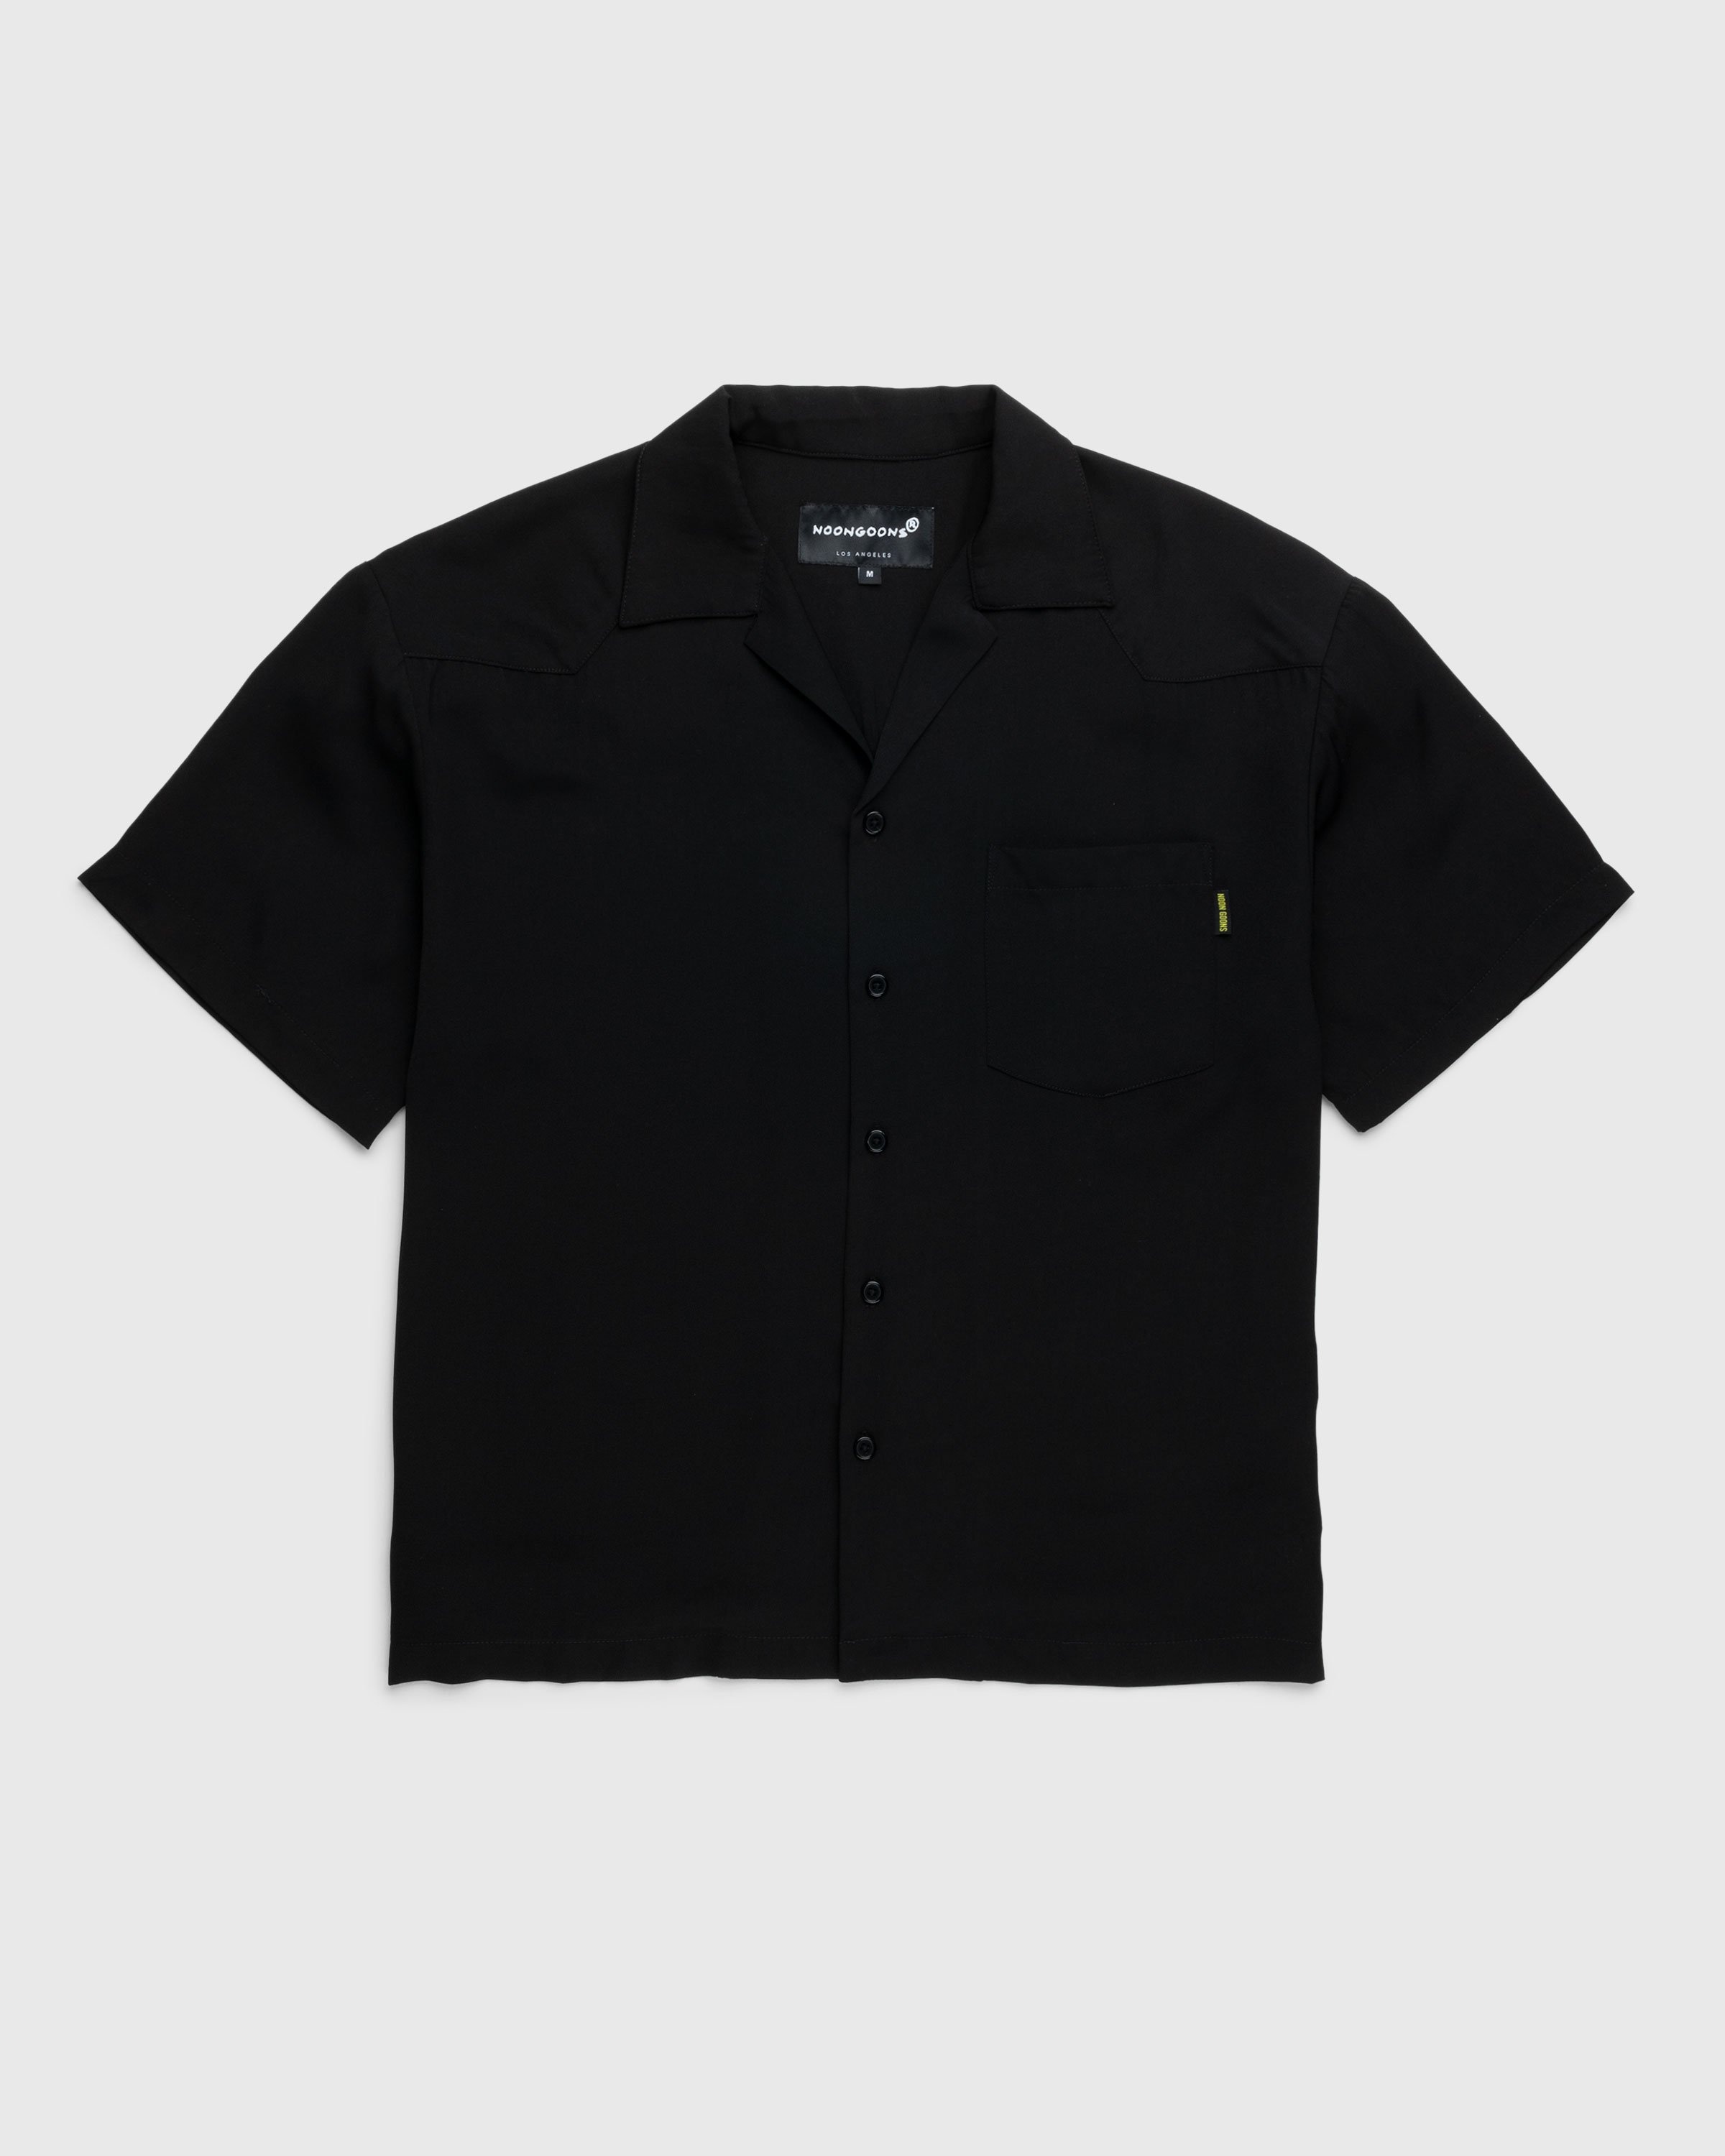 Noon Goons – Kickback Shirt - Shortsleeve Shirts - Black - Image 1